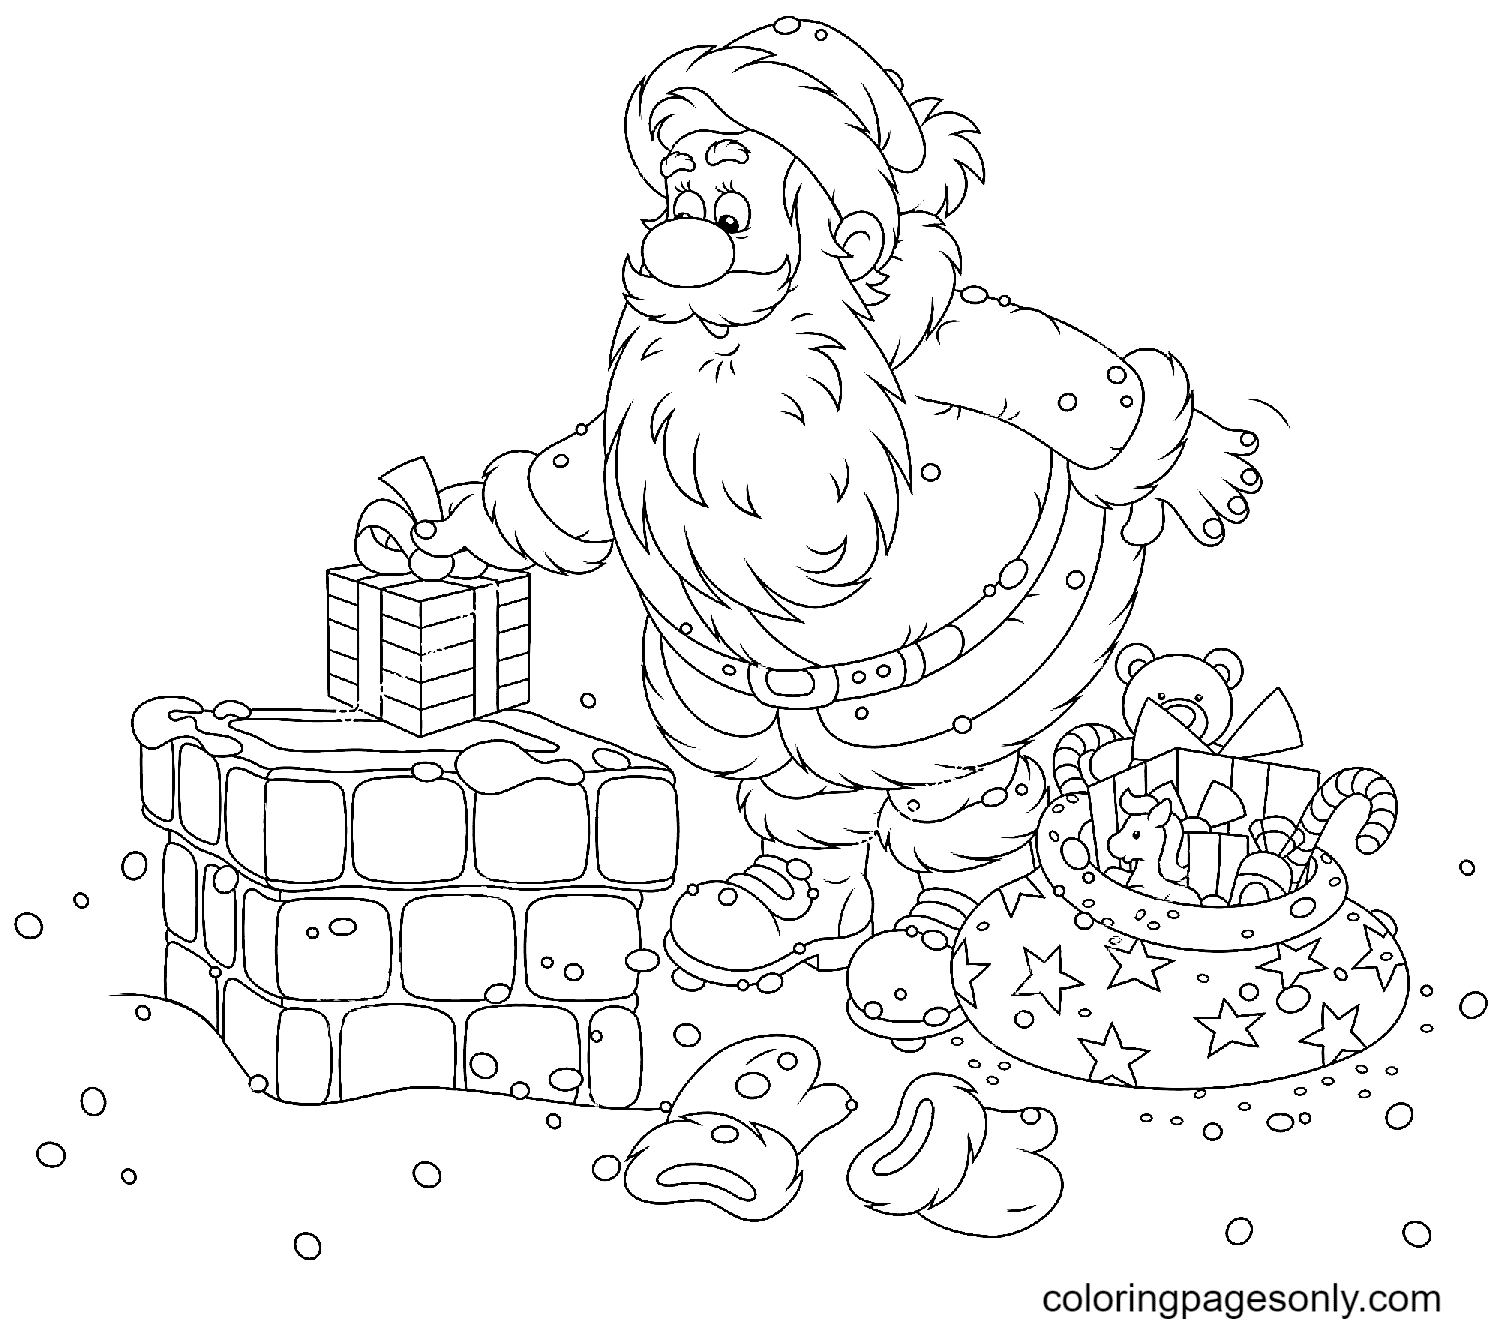 Раскраска Санта-Клаус с рождественскими подарками на крыше дома